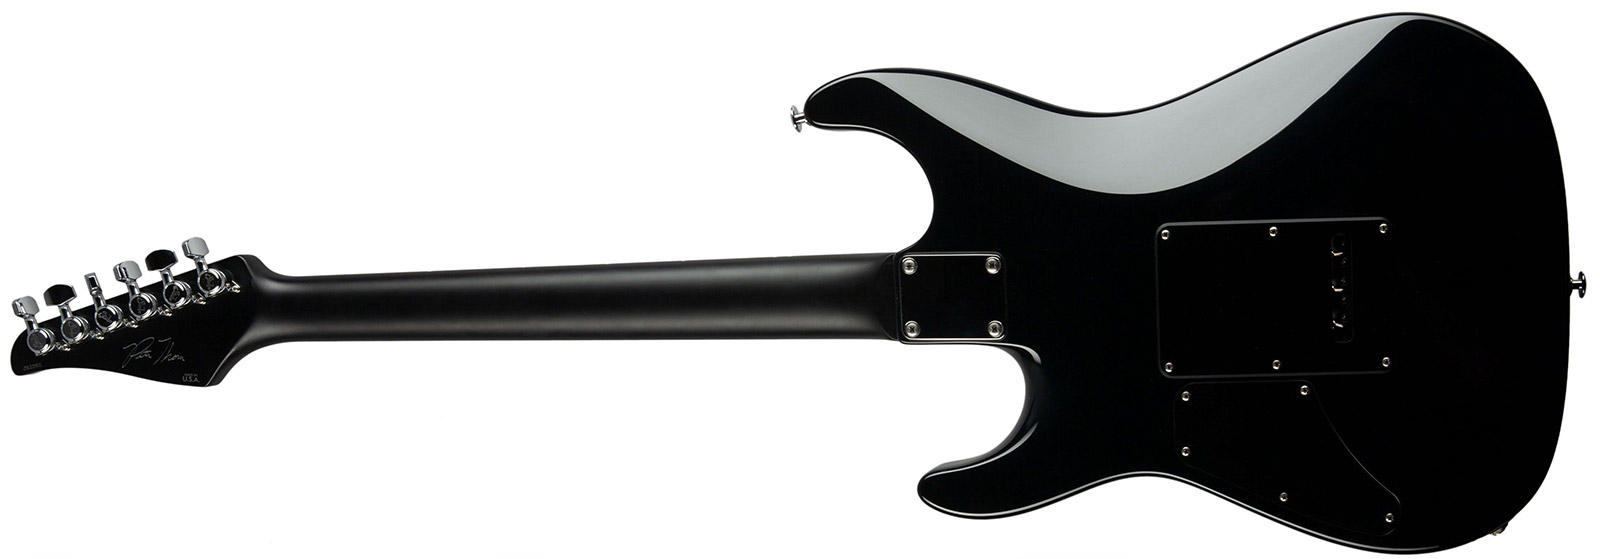 Suhr Pete Thorn Standard 01-sig-0029 Signature 2h Trem Rw - Garnet Red - E-Gitarre in Str-Form - Variation 1